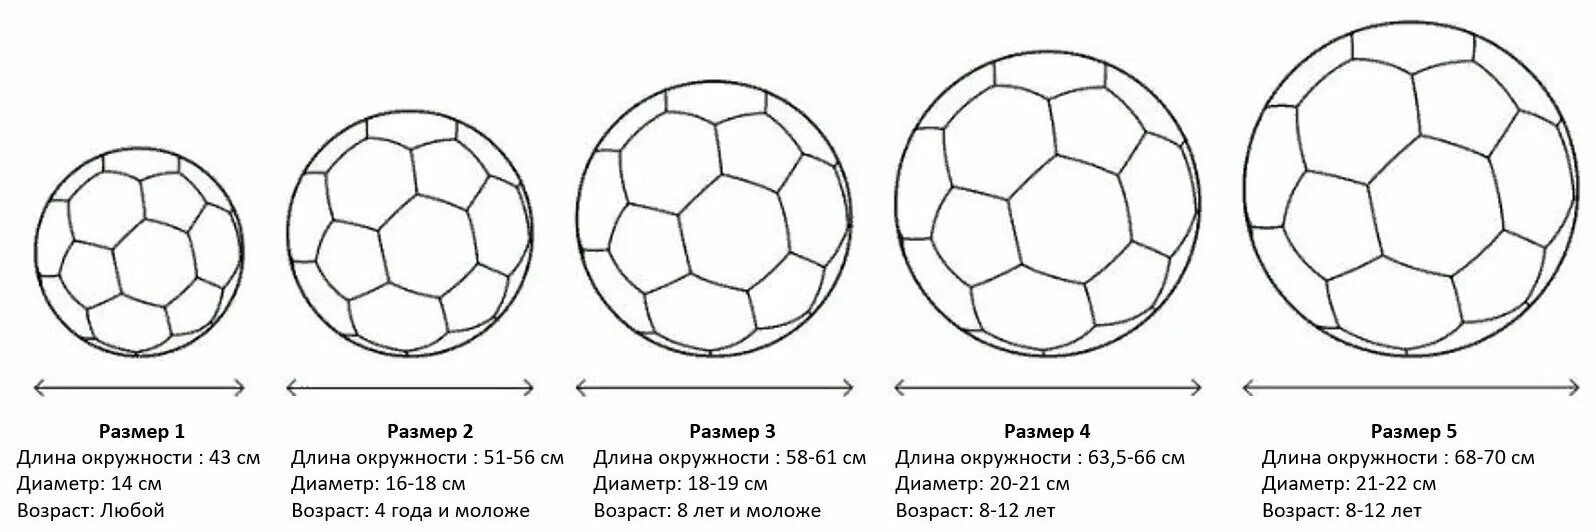 Вес футбольного мяча в граммах. Стандартный размер футбольного мяча диаметр. Футбольный мяч 3 размер диаметр. Таблица размеров футбольных мячей. Мяч футбольный размер 2 Селект.